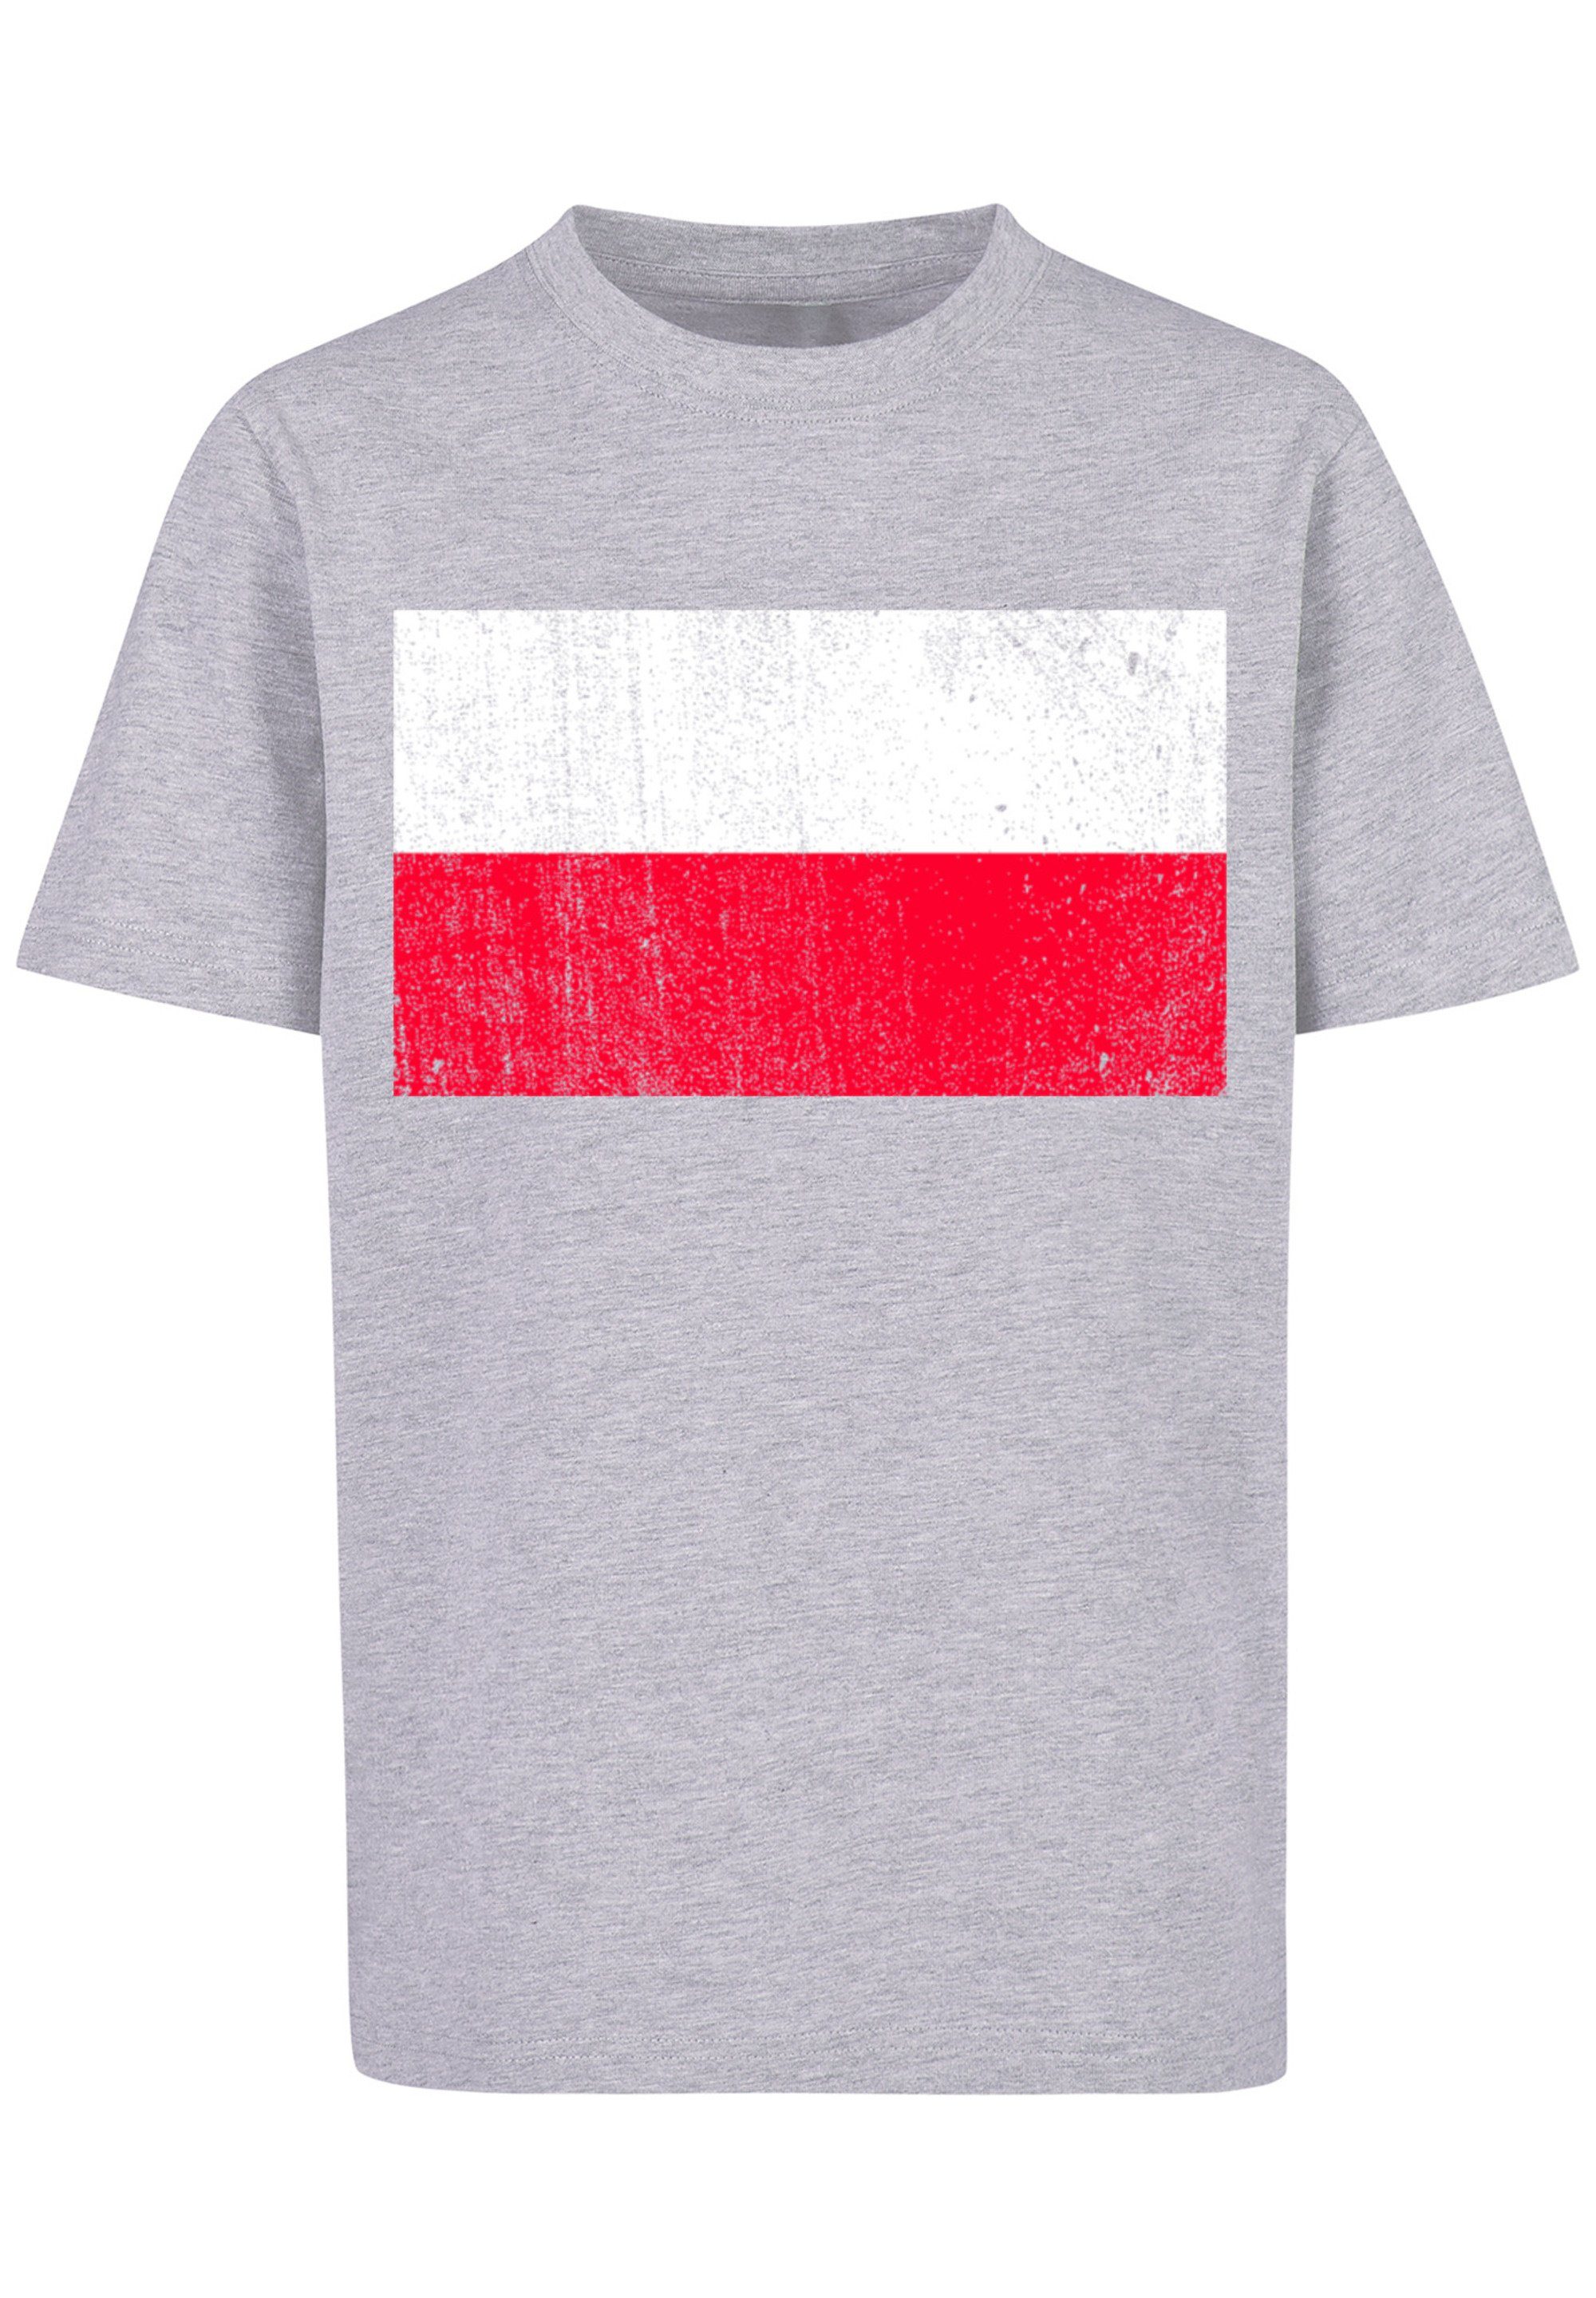 F4NT4STIC T-Shirt Poland Polen Flagge Print, Das groß und Model 145/152 ist Größe distressed cm 145 trägt